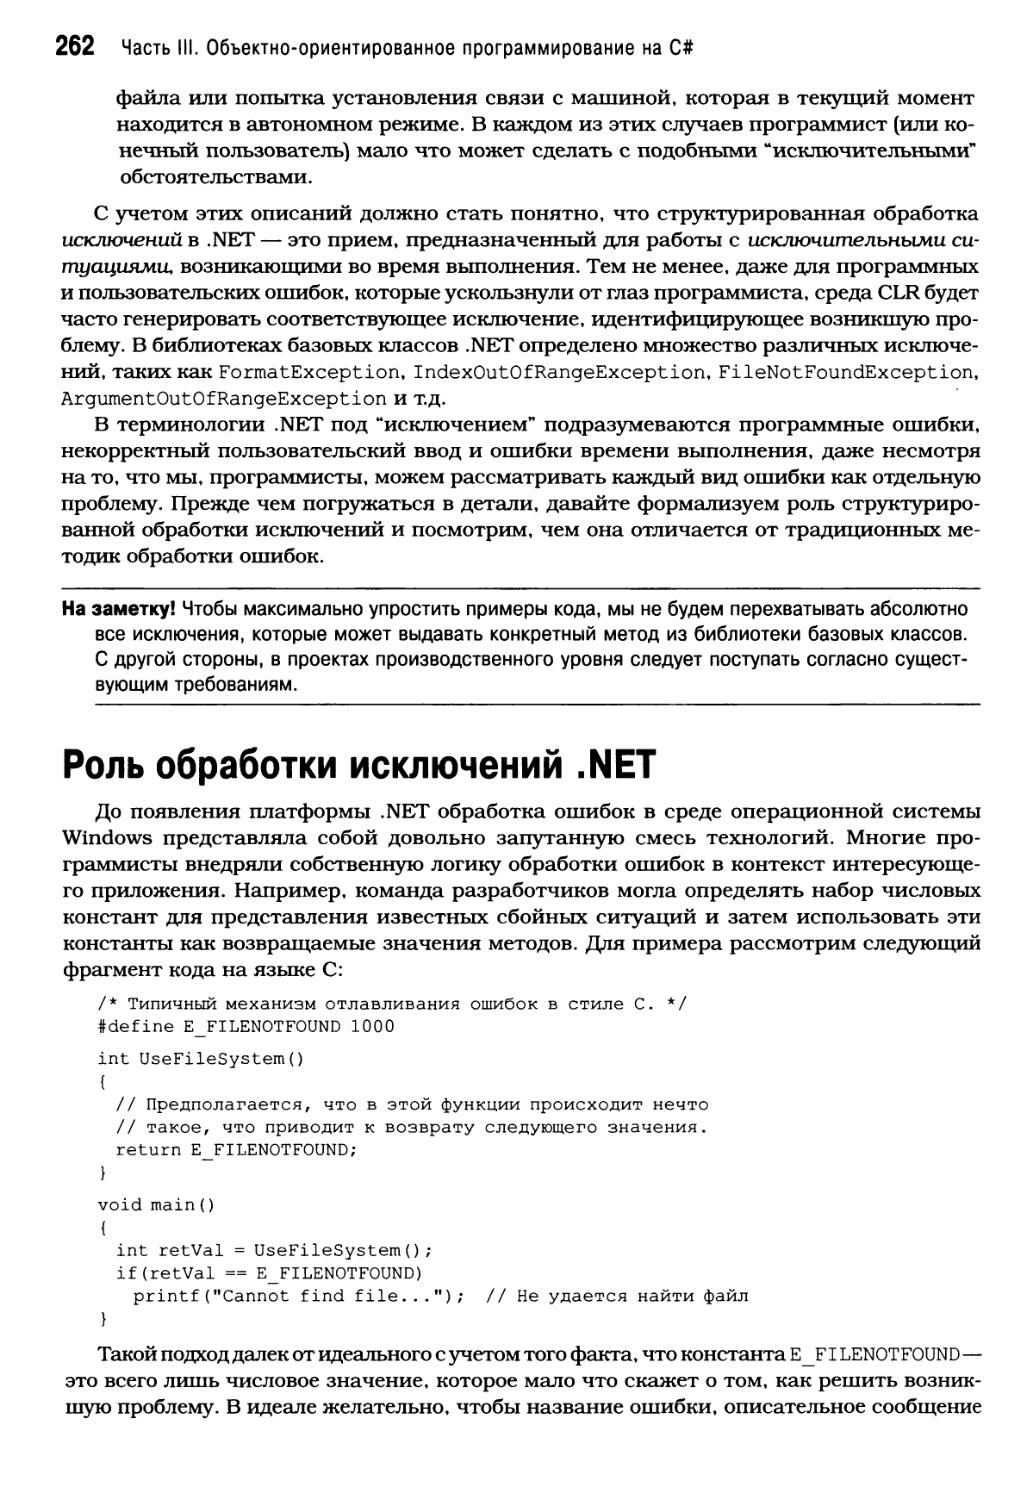 Роль обработки исключений .NET